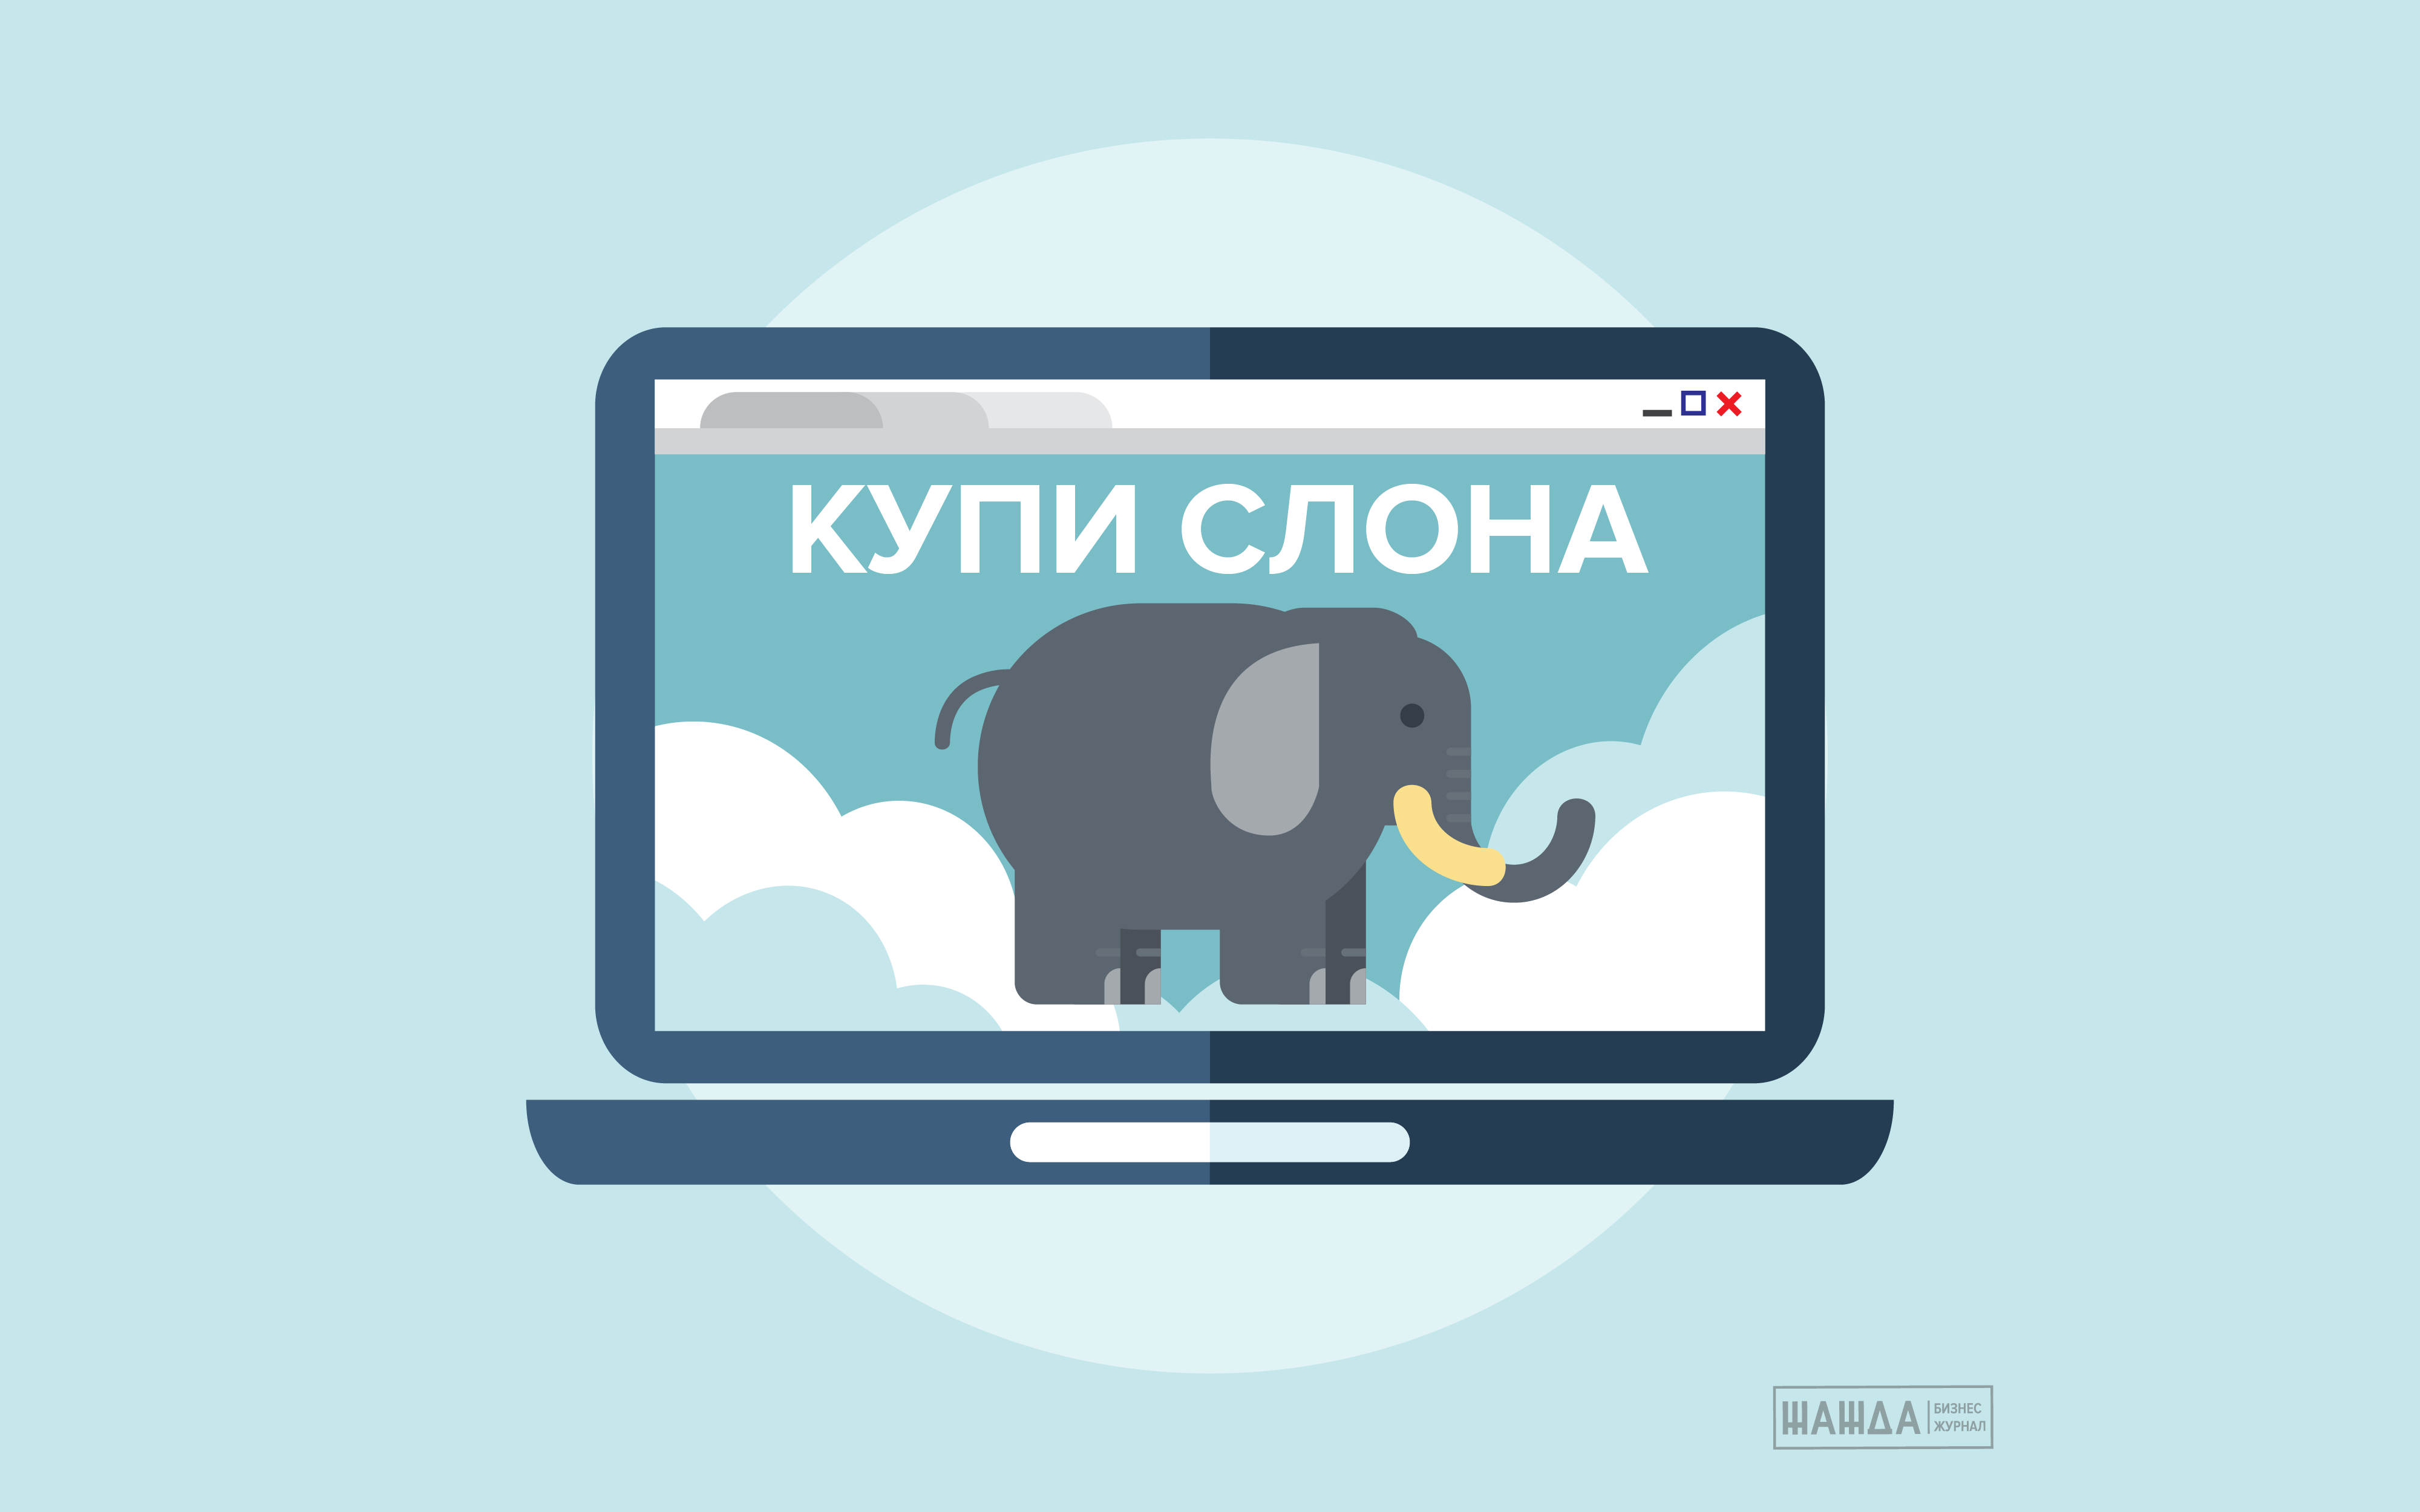 Купи слона ответ. Скупил слона. Купи слона логотип. Продай слона. Купи слона картинка.